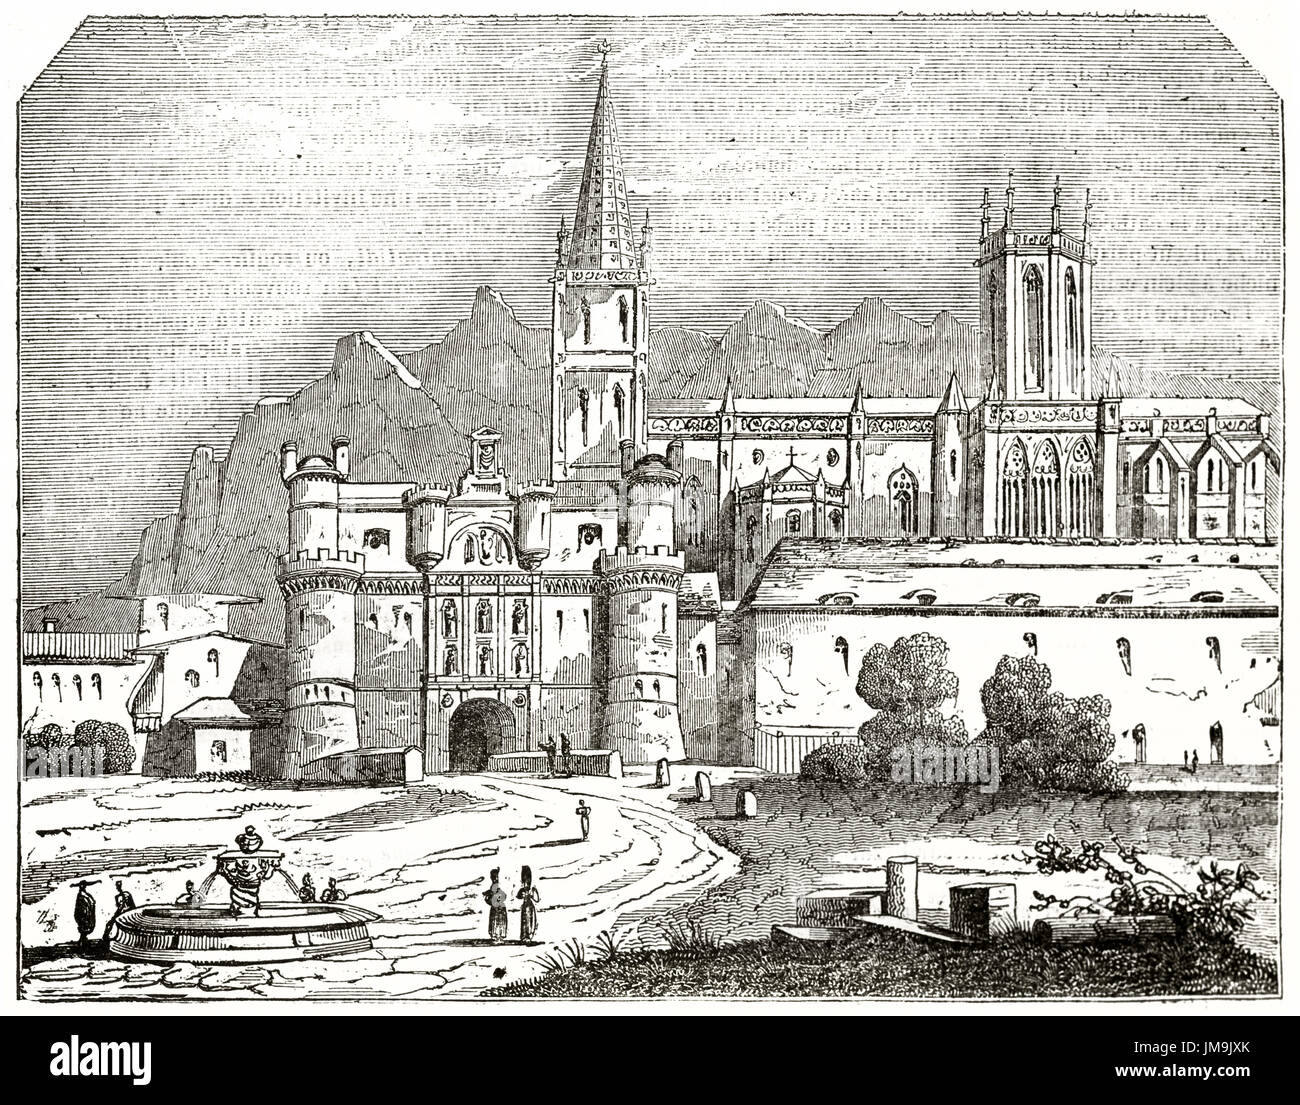 Alte Ansicht von Burgos, Spanien. Erstellt von Laino, veröffentlicht am Magasin Pittoresque, Paris, 1837. Stockfoto